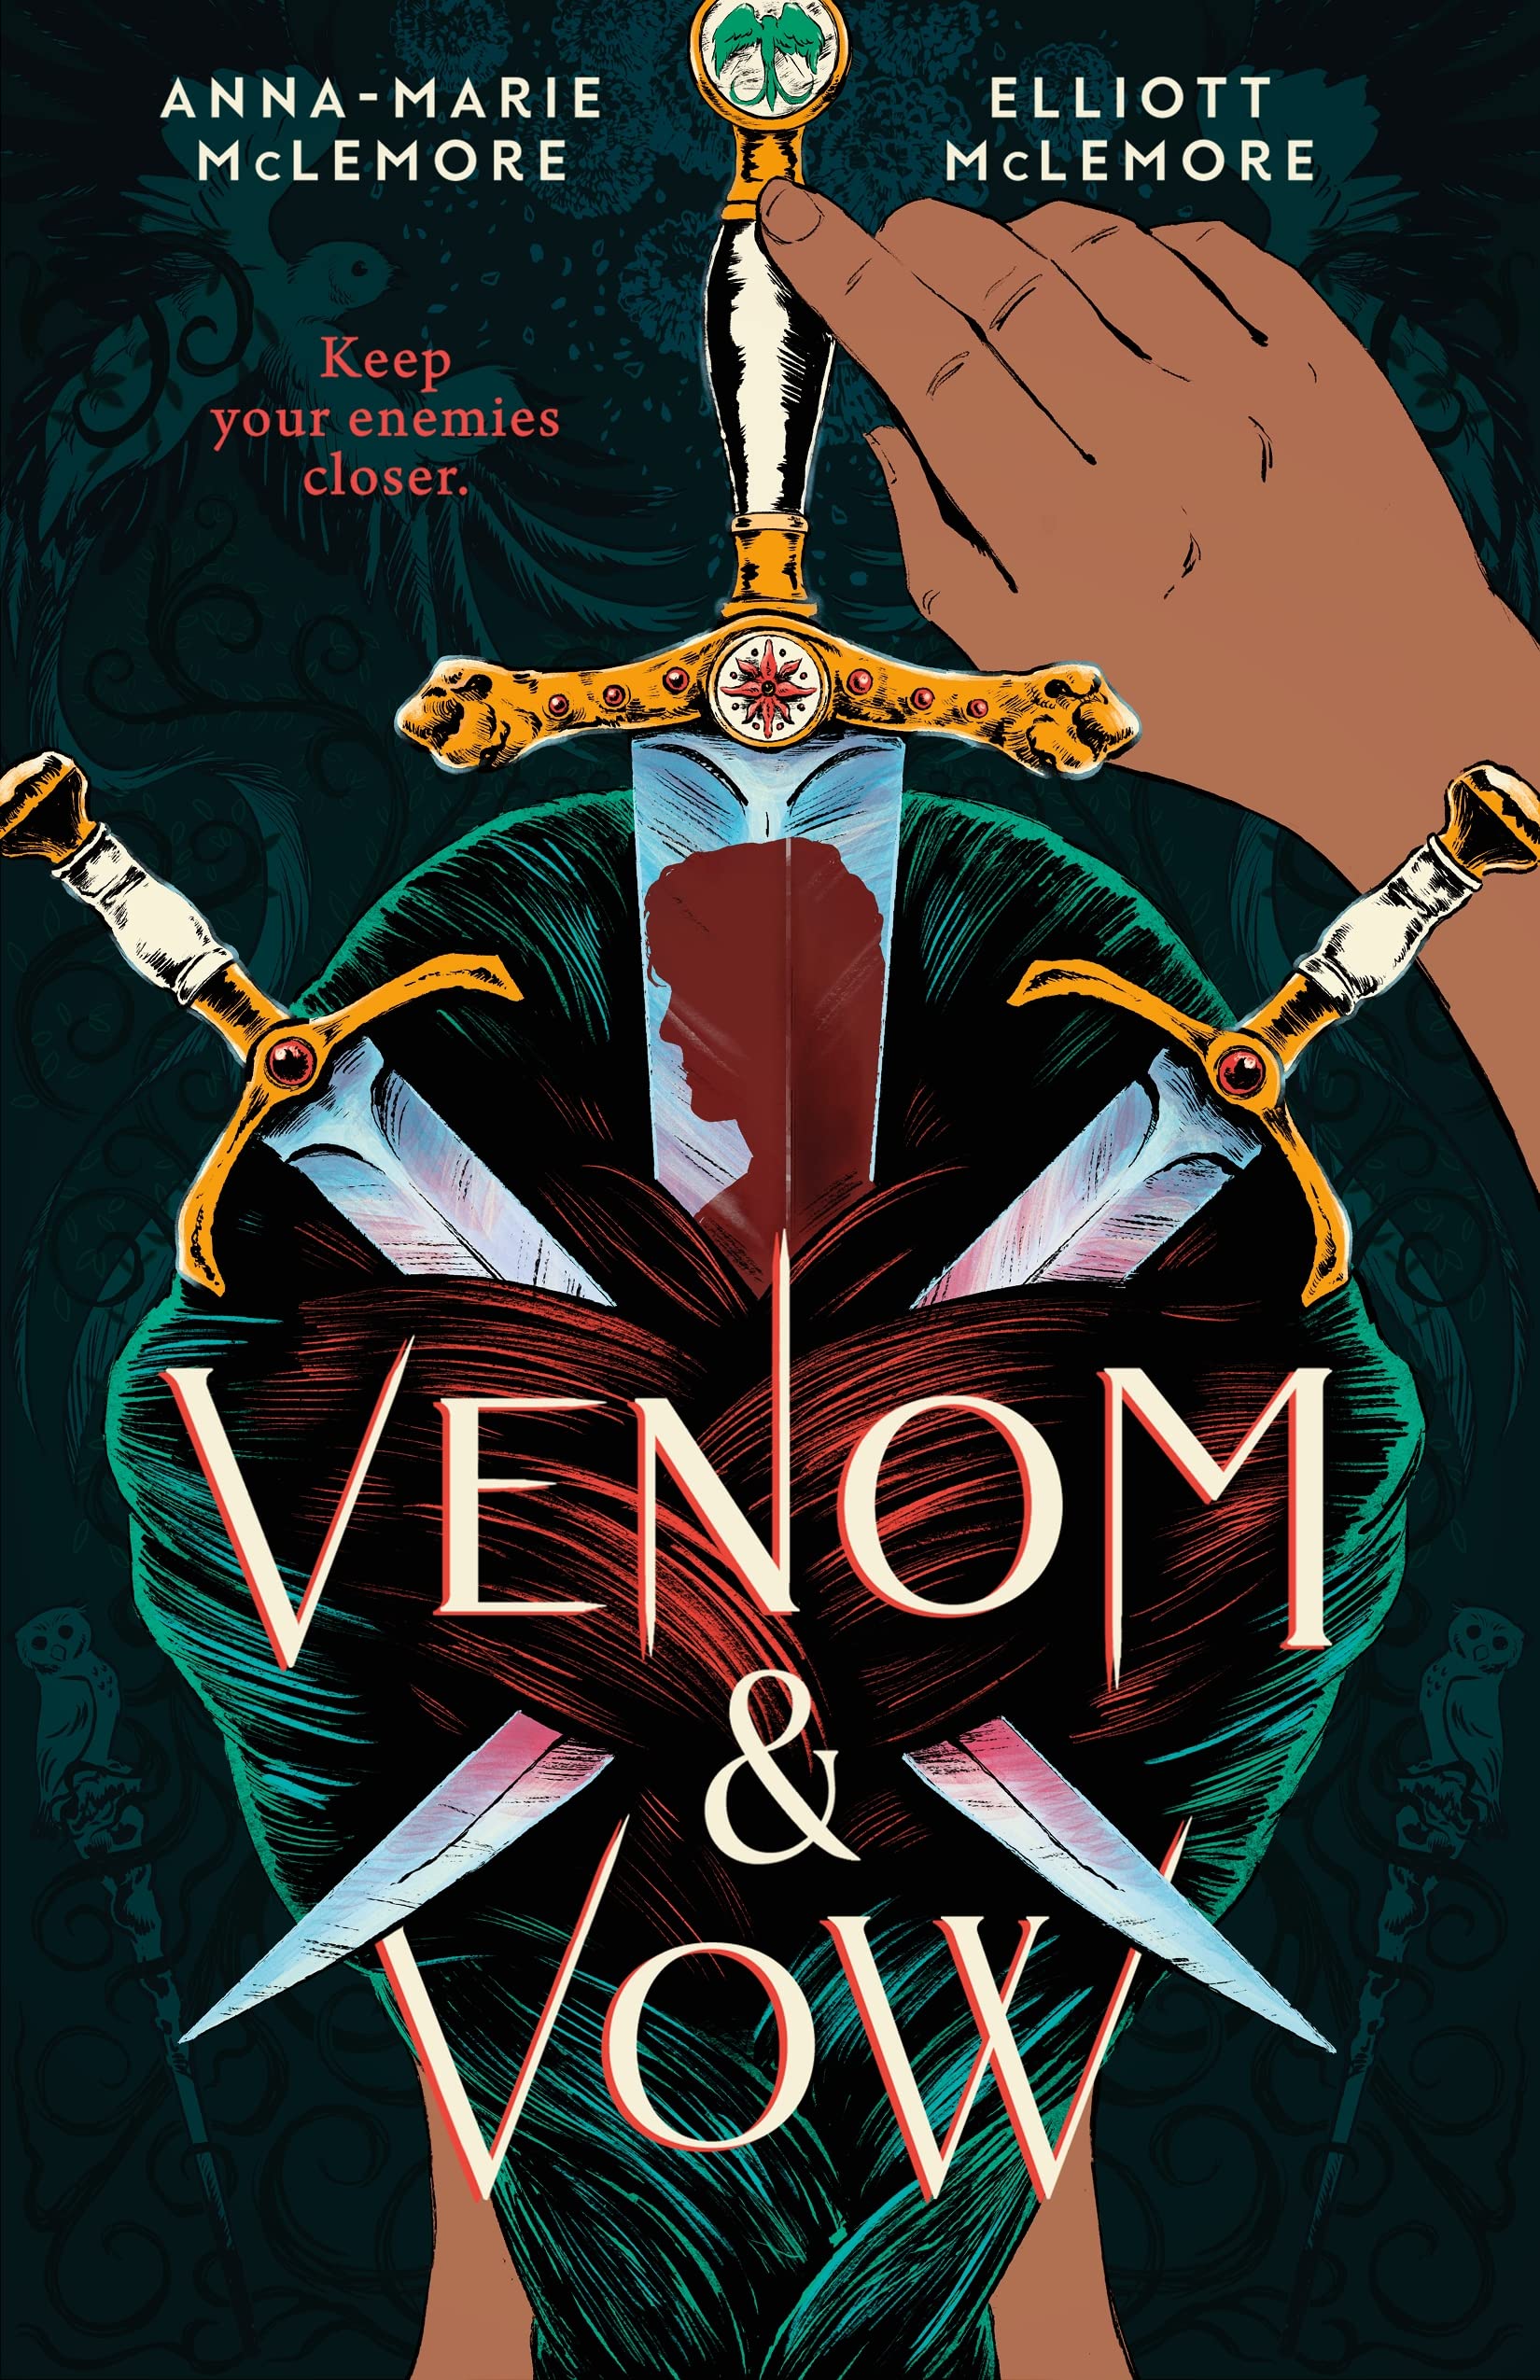 Venom & Vow | Anna-Marie McLemore, Elliott McLemore